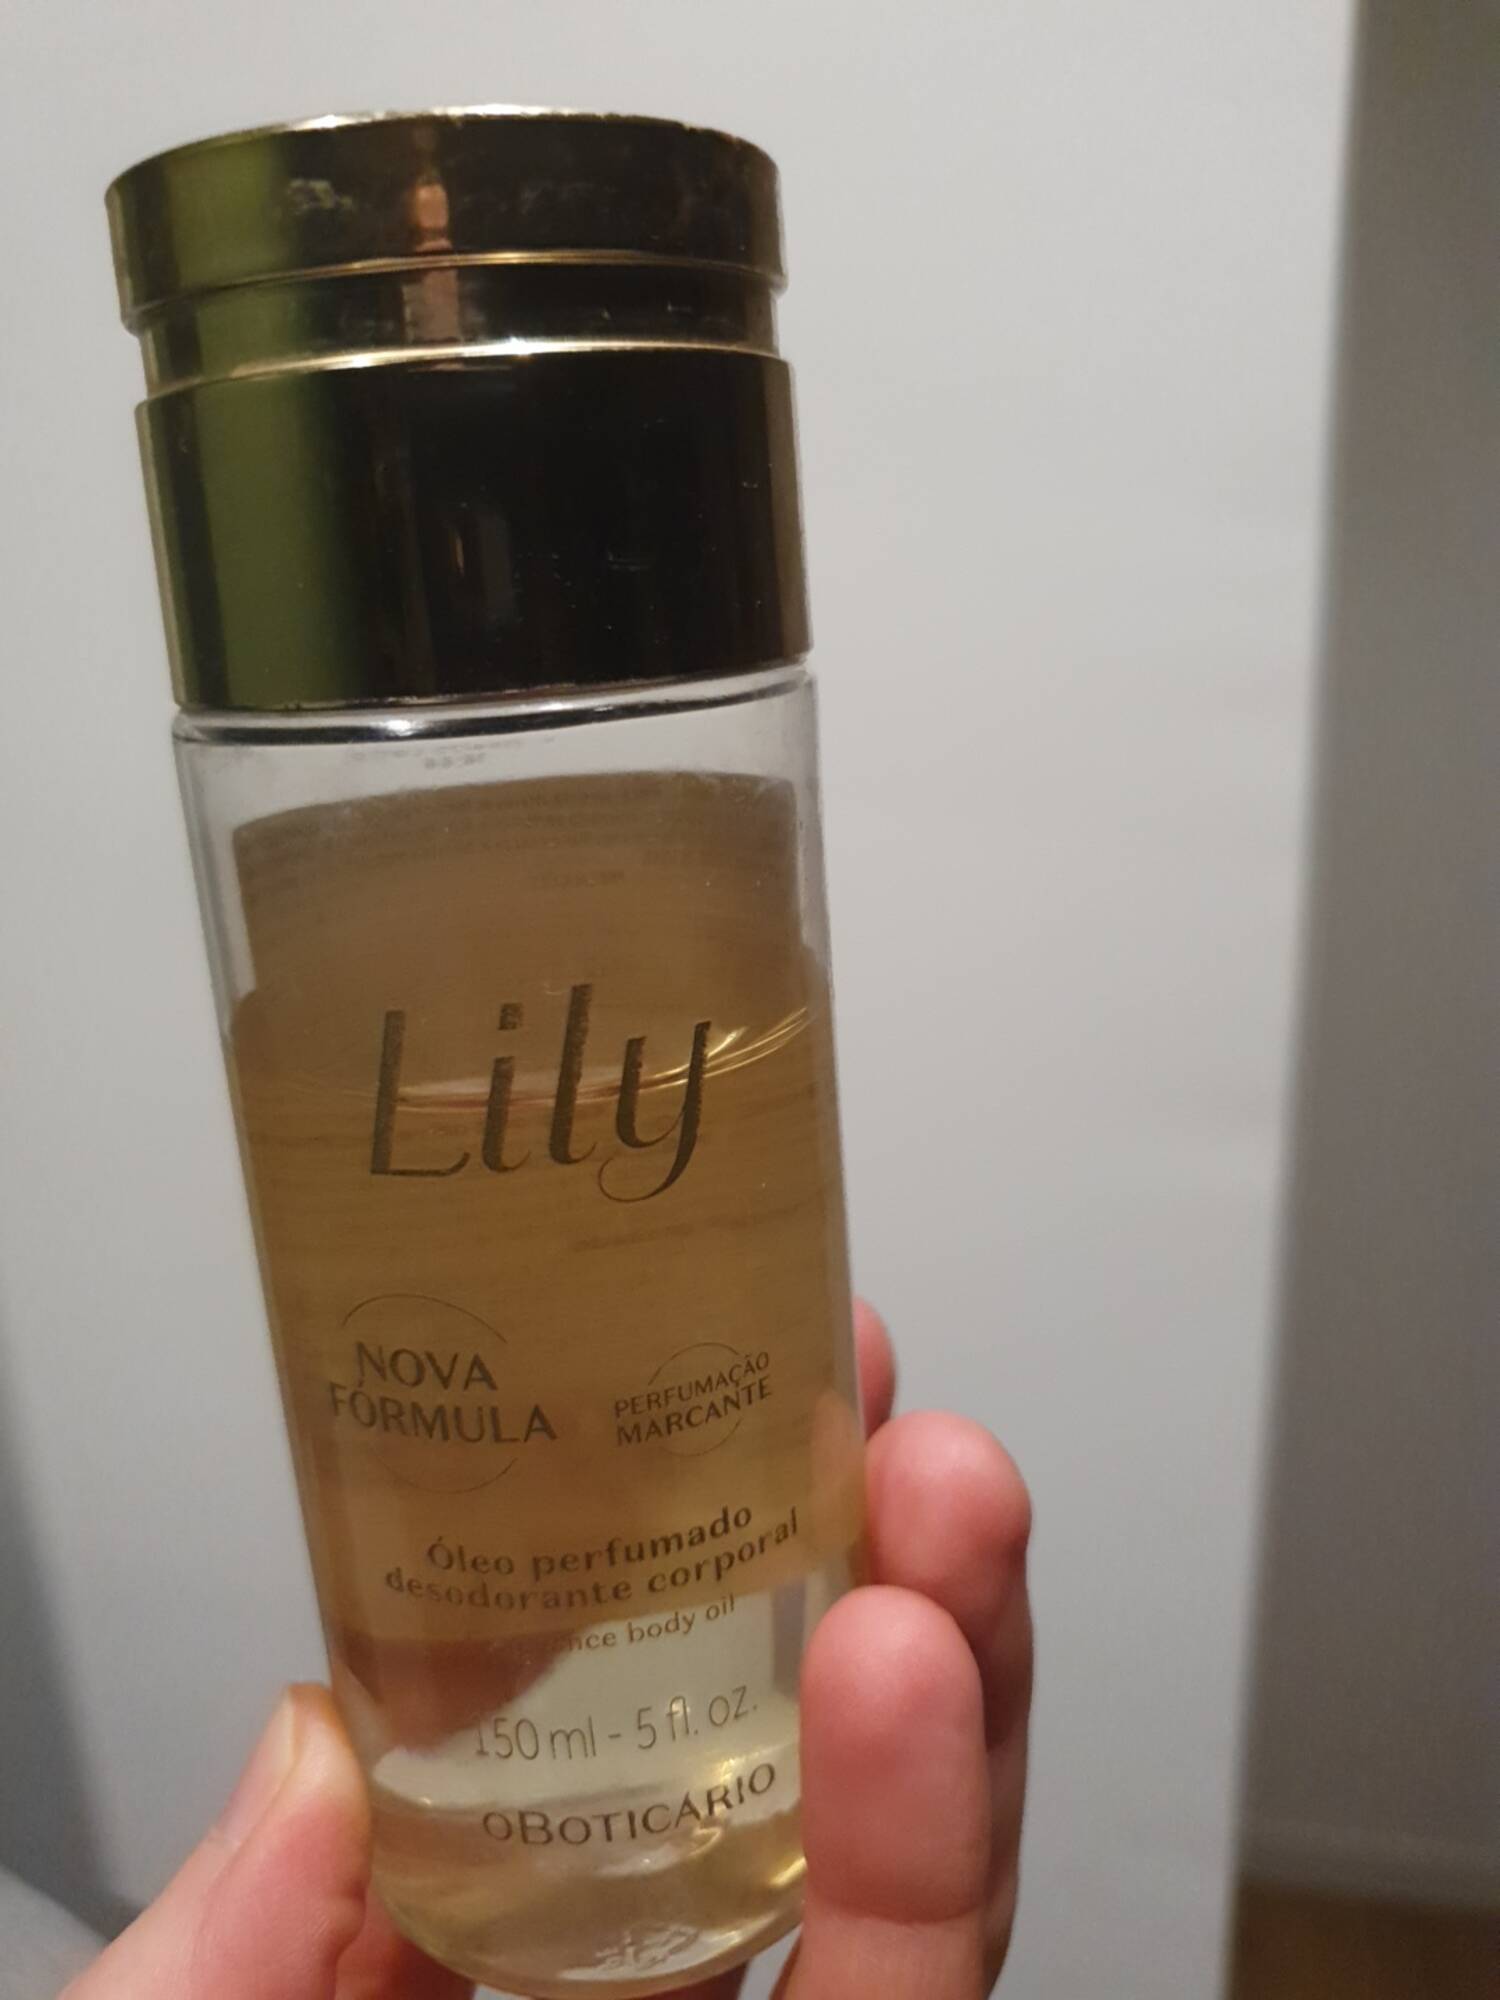 O BOTICARIO - Oleo perfumado desodorante corporal Lily